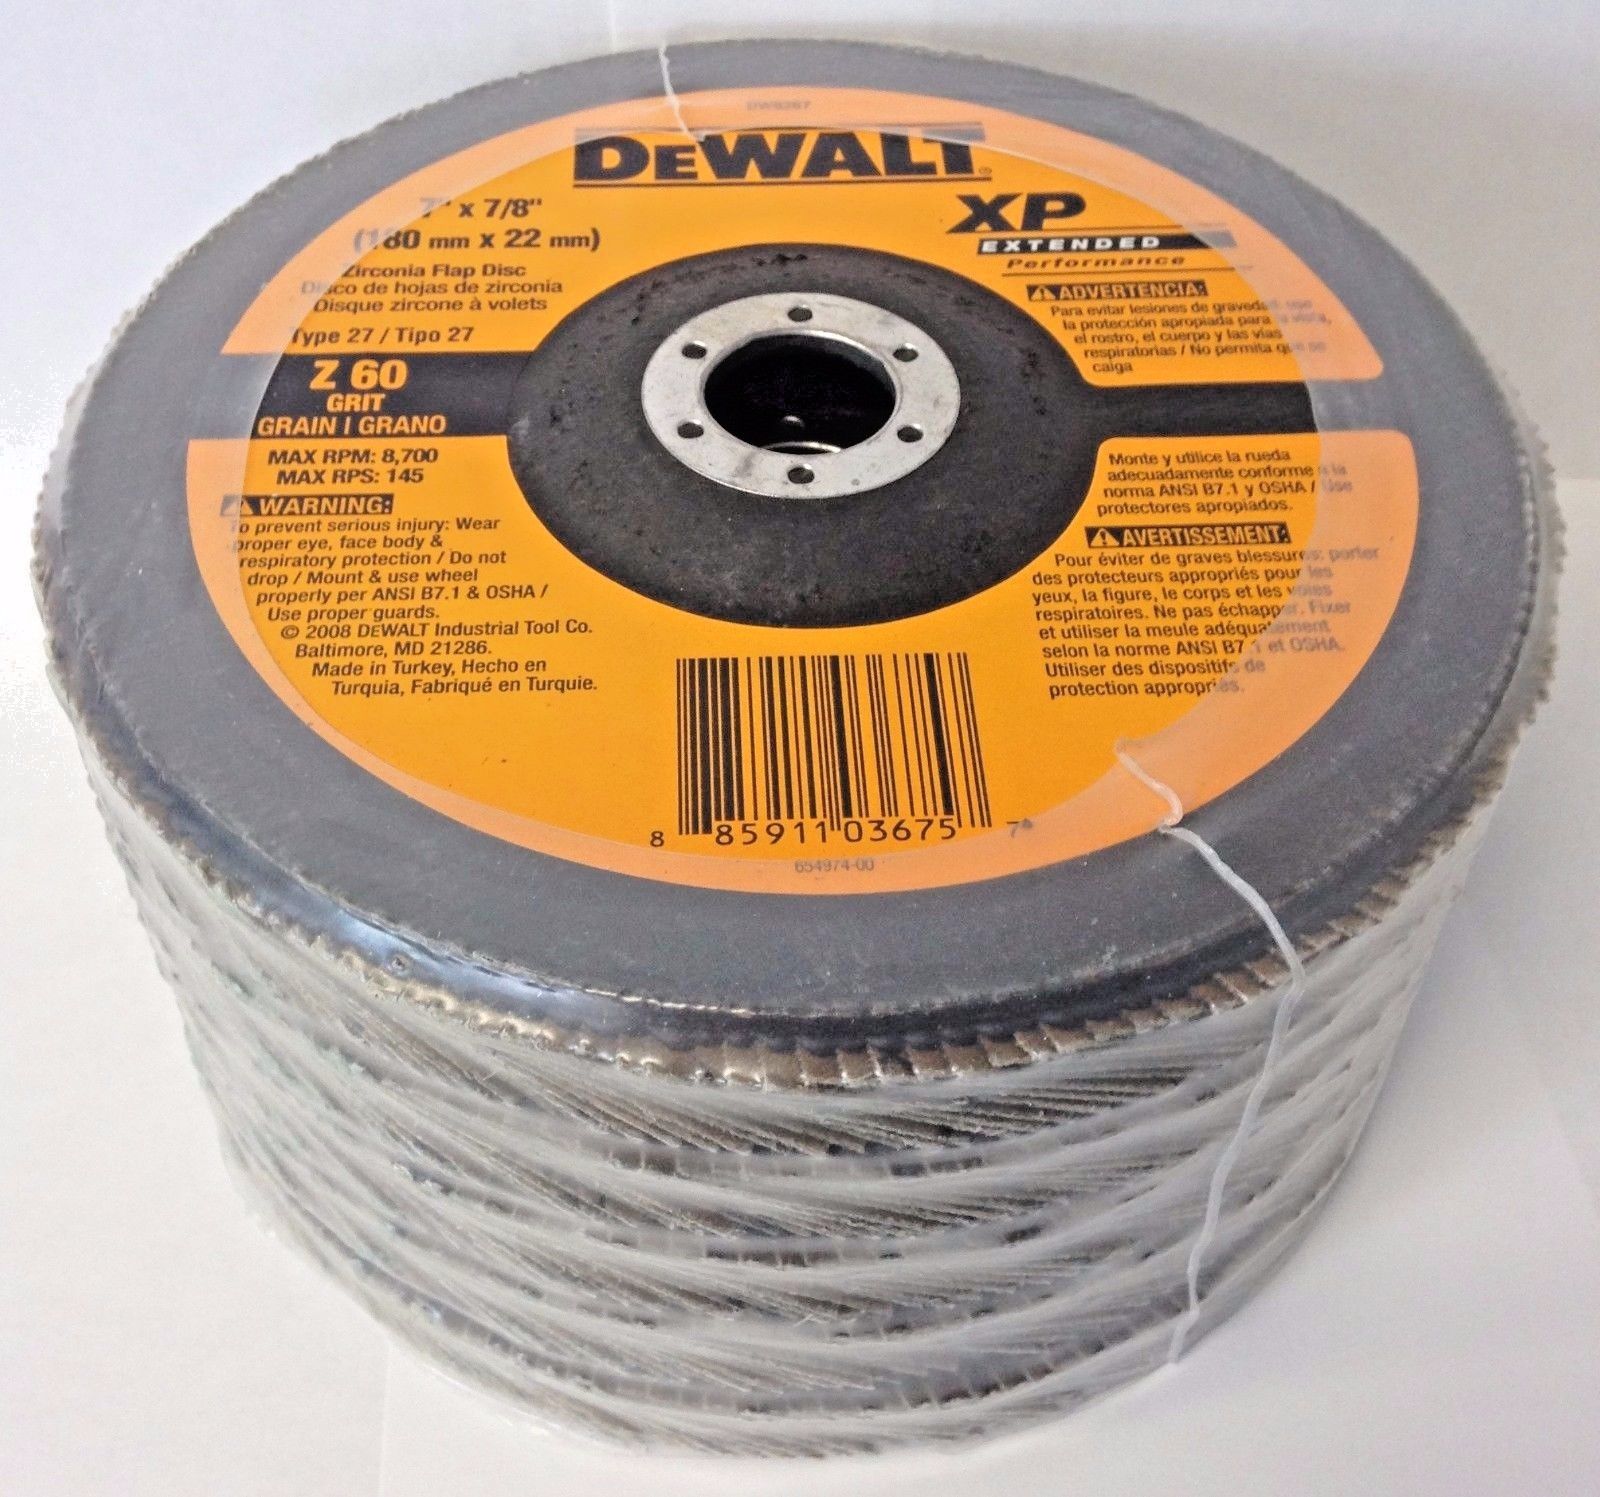 Dewalt DW8267 7" x 7/8" Z 60 Grit Flap Discs Extended Performance 5 Pack